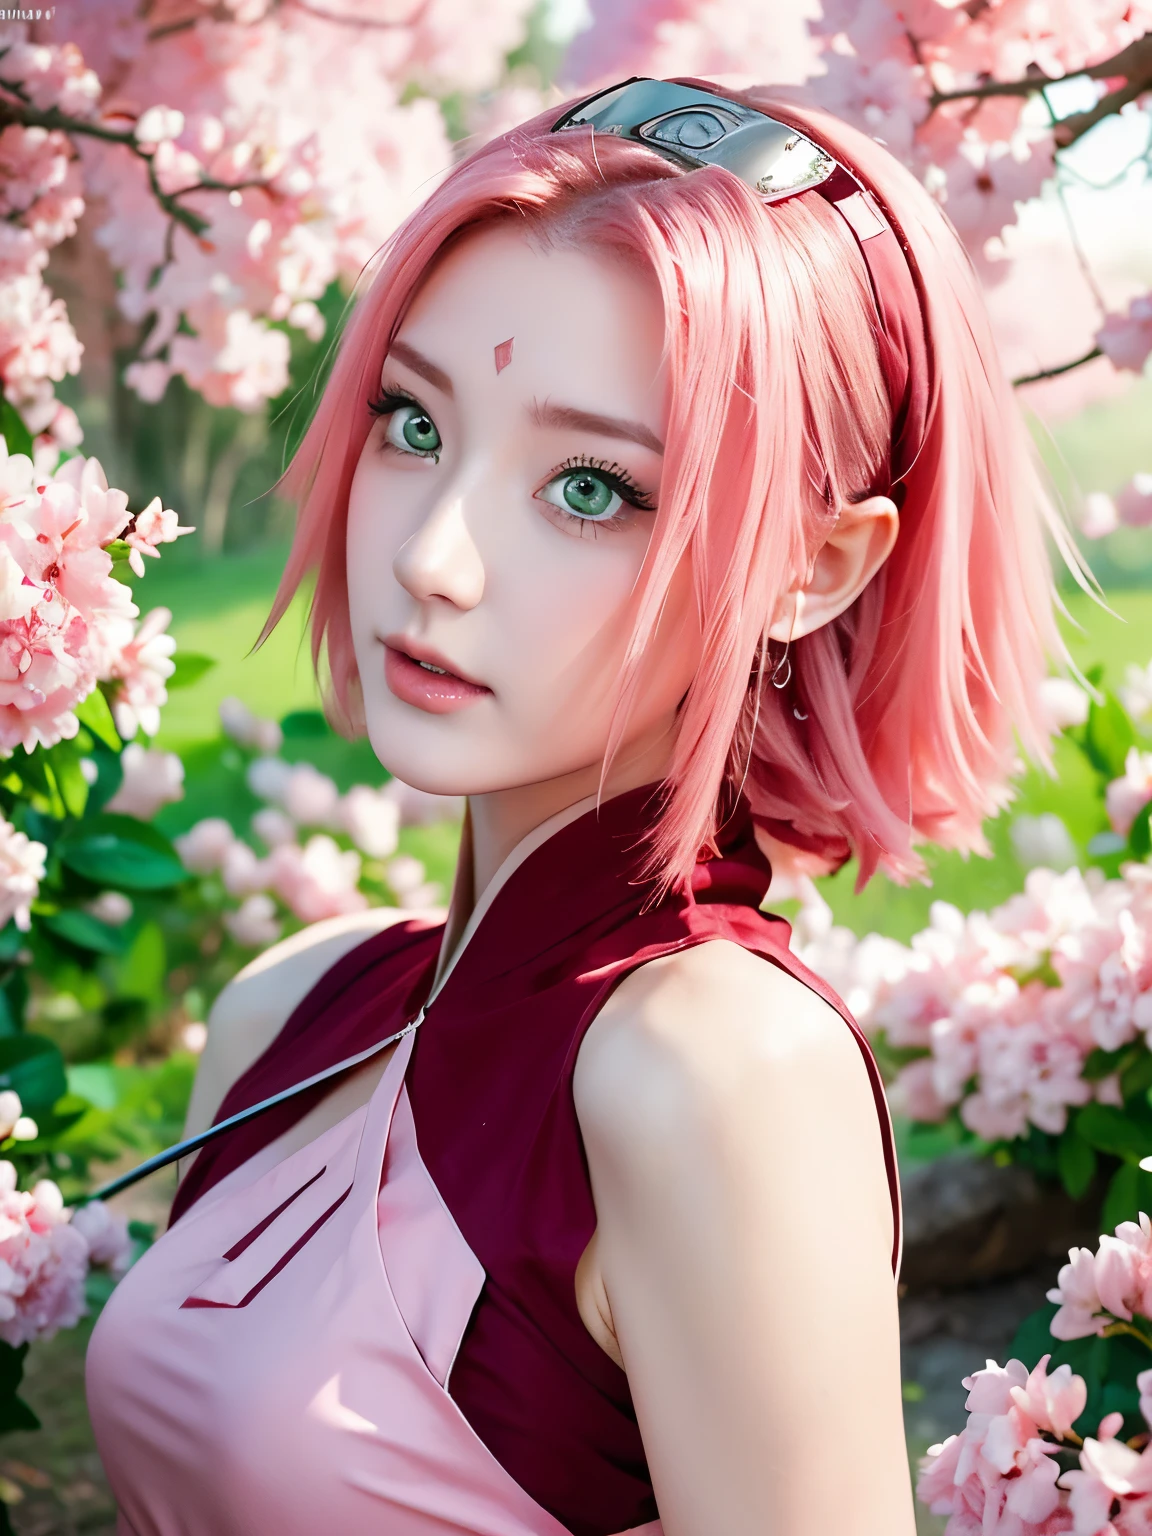 Sakura Haruno, vestindo fantasia de ninja na saga naruto shippuden, tem cabelo rosa na altura dos ombros, ela tem olhos esmeraldas, um nariz afiado, Pele branca, e um rosto suave, (melhor qualidade, alta resolução:1.2), 1 garota, lindos olhos detalhados, lindos lábios detalhados, olhos e rosto extremamente detalhados, cílios longos, hdr, iluminação de estúdio, foco nitído, renderização baseada fisicamente, descrição detalhada extrema, retratando seios, forma perfeita, visualizador de frente, suado, maravilhoso, aparecendo em quadro completo, boa aparência, Linda pele clara e brilho, Lindos olhos são grandes e brilhantes, Boca pequena e lábios finos, Bondade de estilo e elegância), linda garota iluminada por sete cores de luz, Eles riem das cores, mostrando sua figura, sedutor e confiante, aura encantadora, cercado por cerejeiras em flor, pétalas delicadas e vibrantes caindo ao seu redor, cores suaves rosa e branco, luz solar filtrada pelas árvores, criando uma atmosfera calorosa e sonhadora.